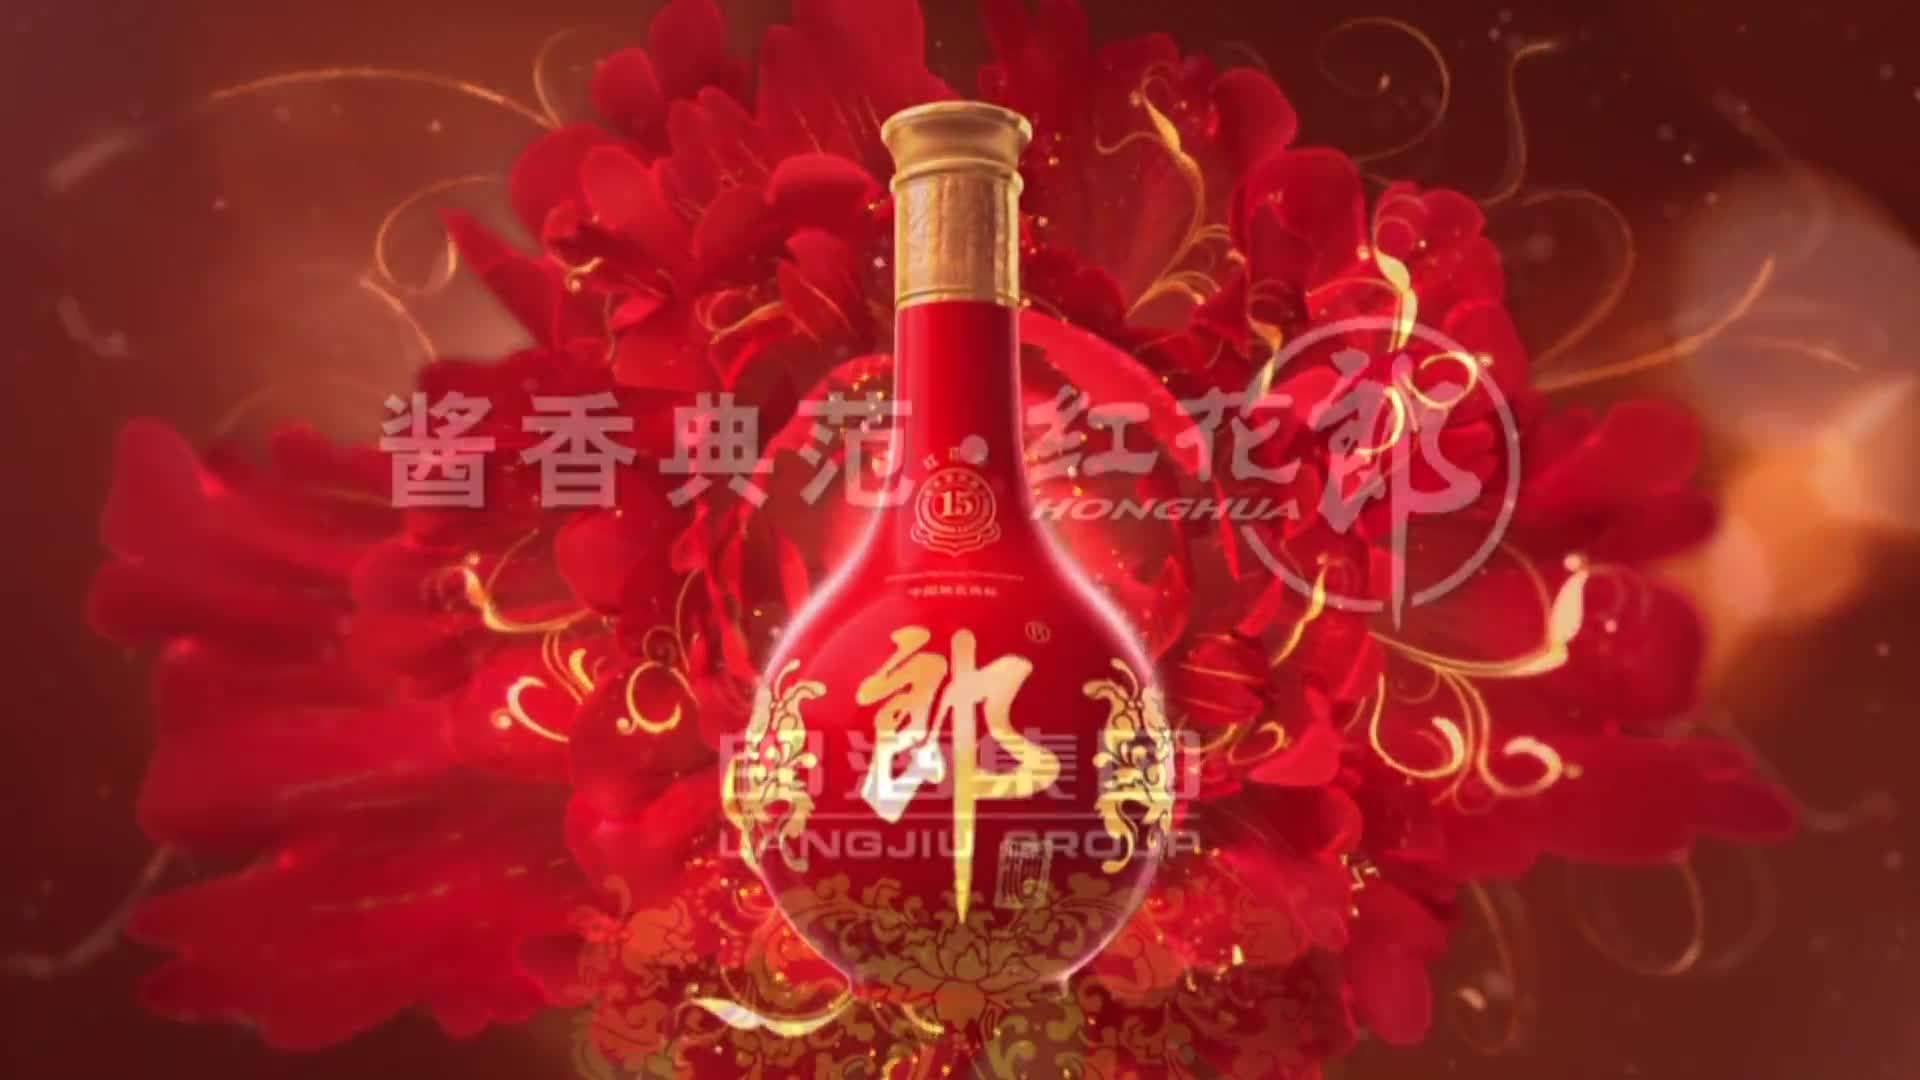 红花郎酒 -《酿造篇》- 北京花开富贵阳光文化传媒股份有限公司制作